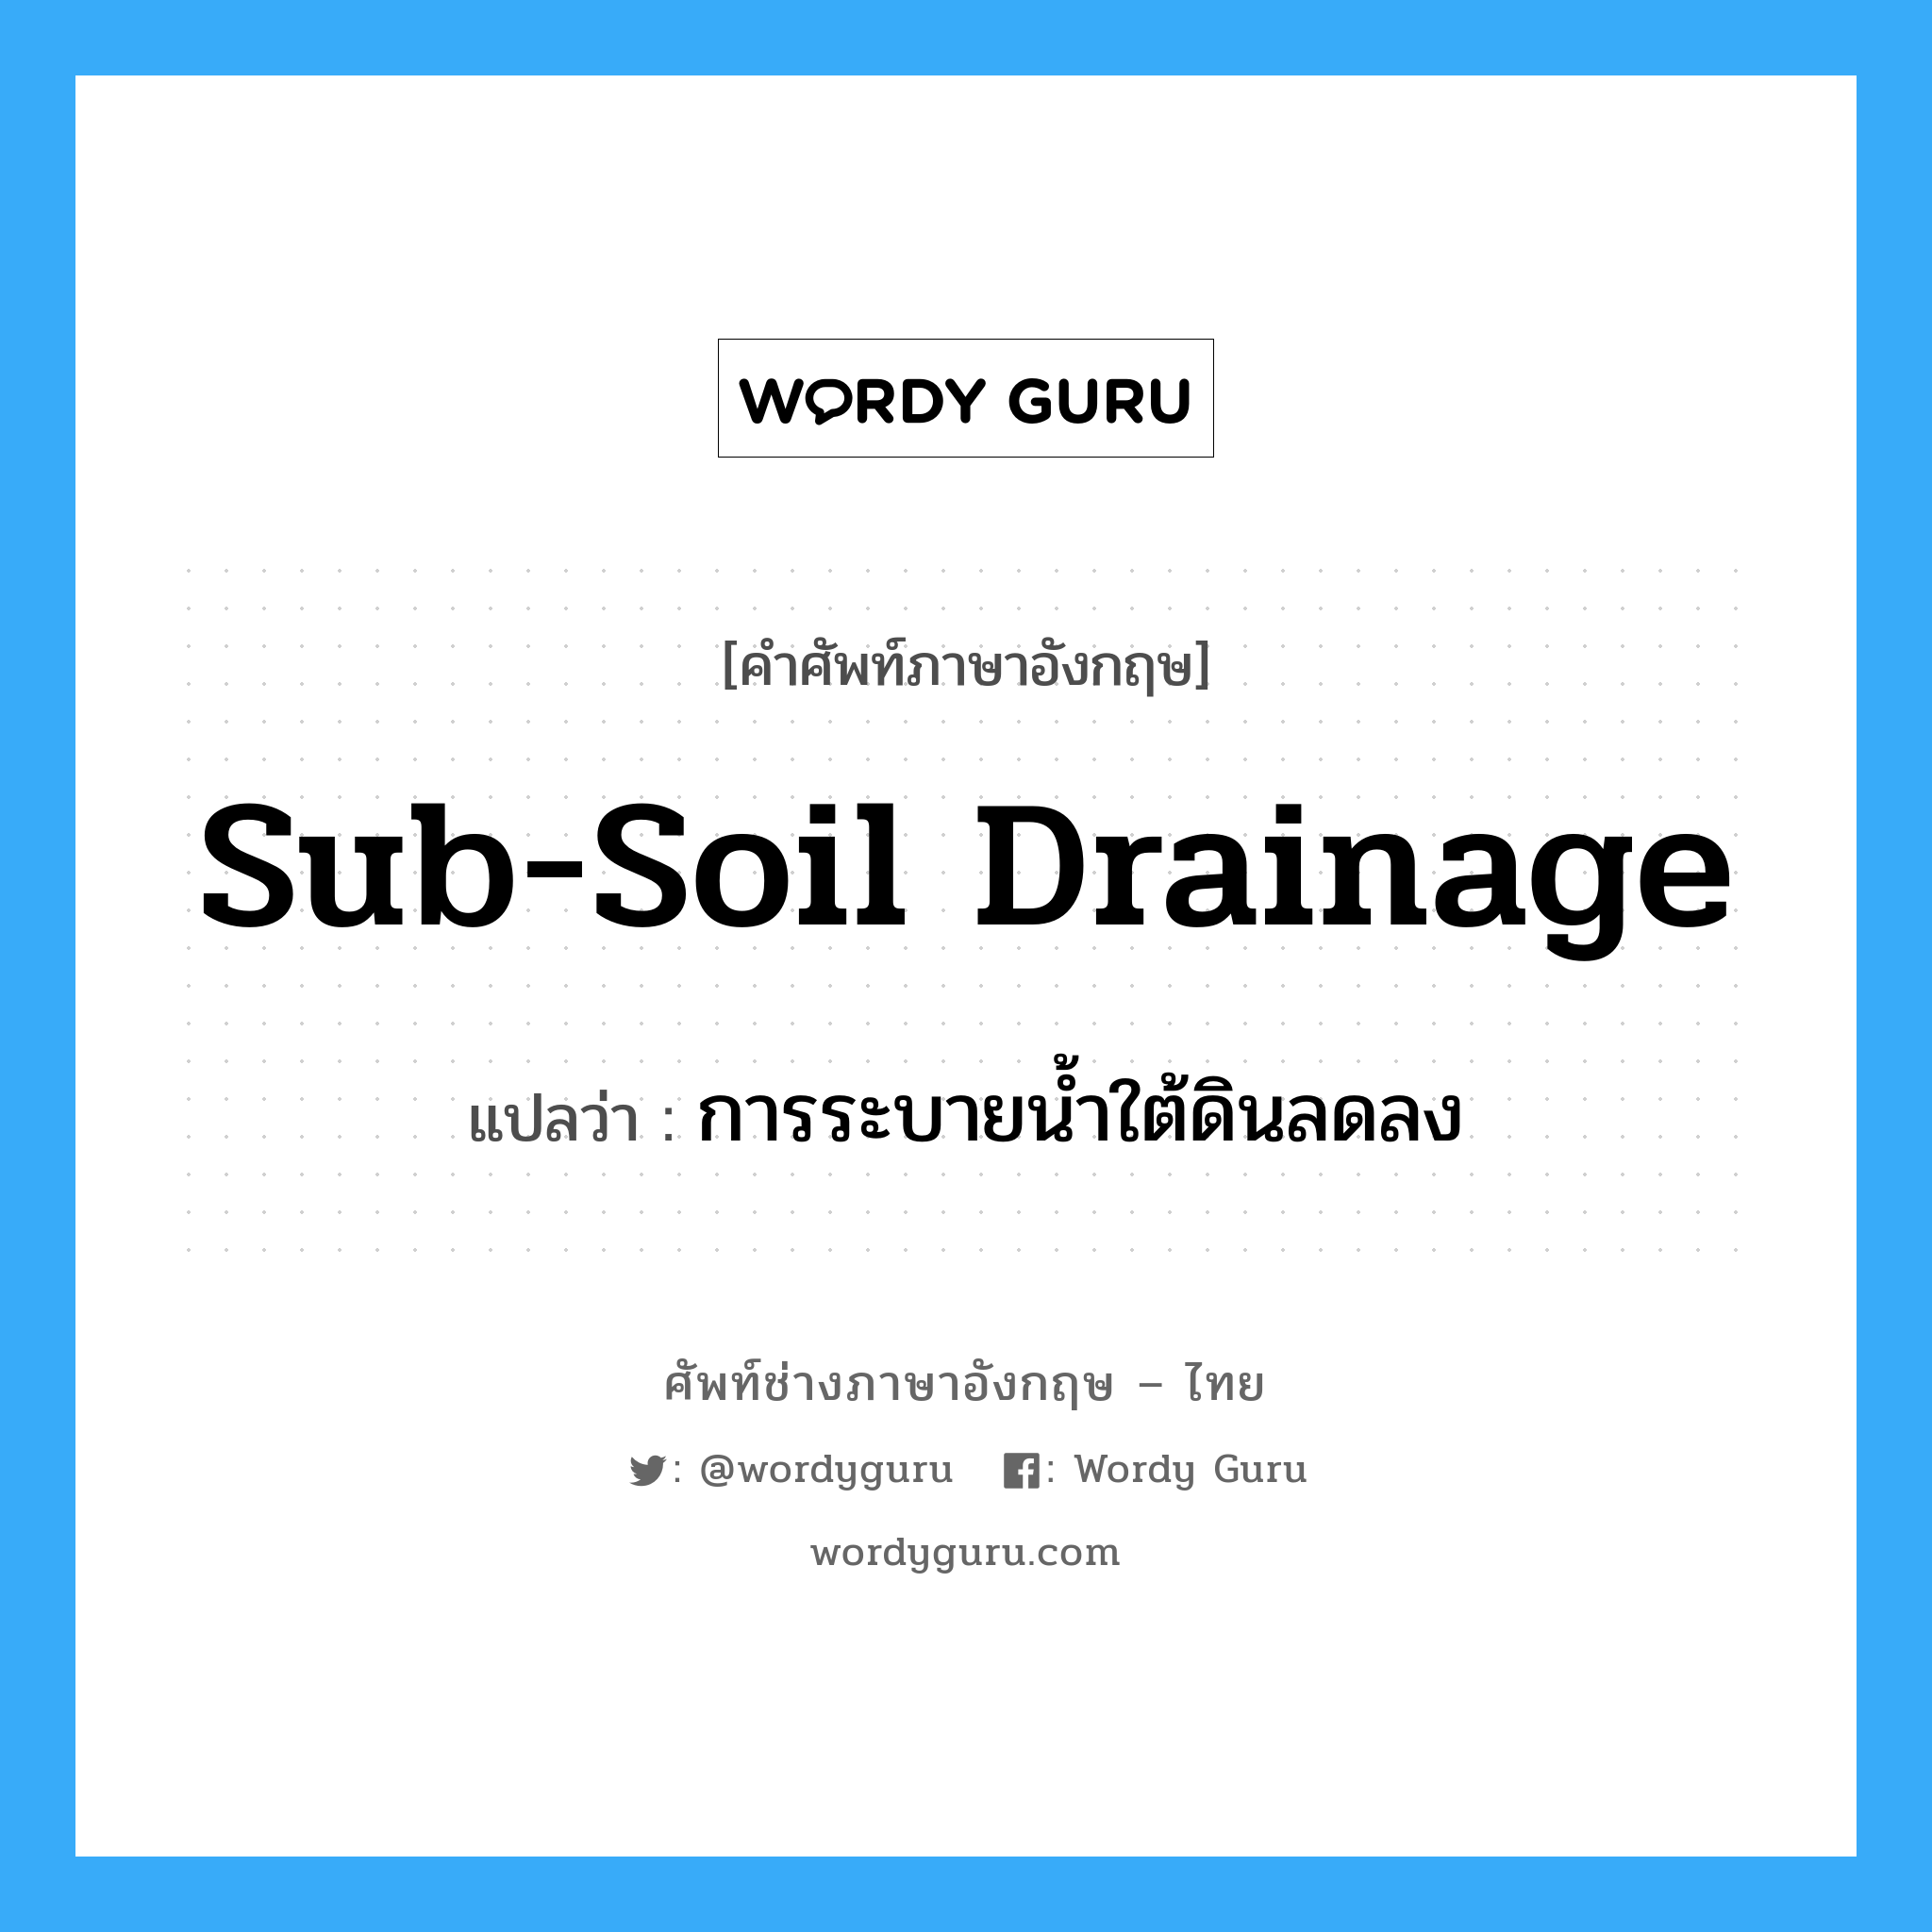 การระบายน้ำใต้ดินลดลง ภาษาอังกฤษ?, คำศัพท์ช่างภาษาอังกฤษ - ไทย การระบายน้ำใต้ดินลดลง คำศัพท์ภาษาอังกฤษ การระบายน้ำใต้ดินลดลง แปลว่า sub-soil drainage